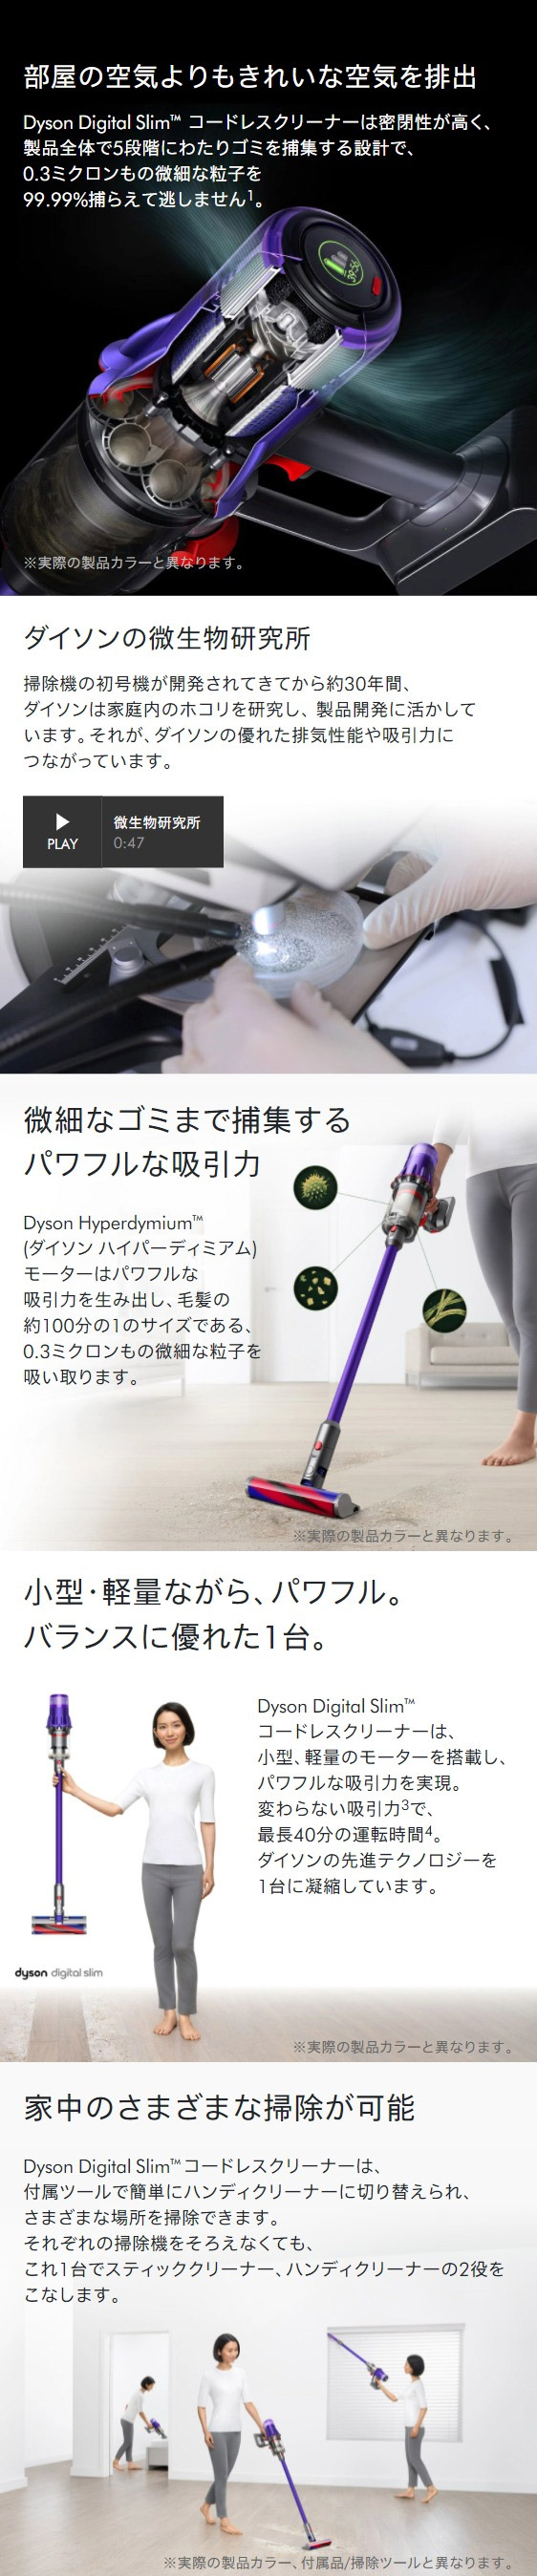 掃除機 コードレス掃除機 【軽量でパワフル】ダイソン Dyson Digital ...